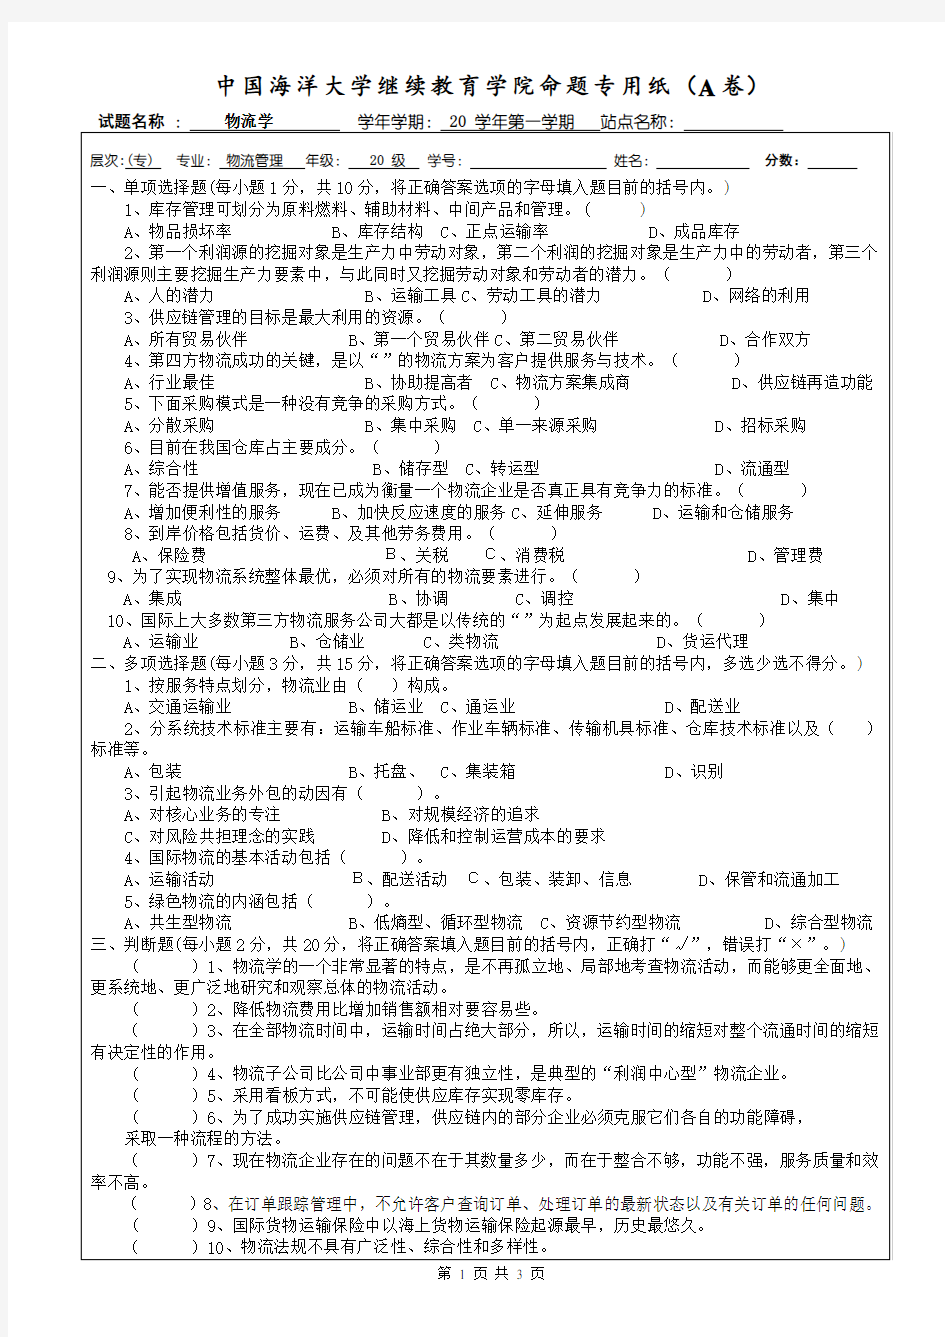 中国海洋大学期末考试1物流学导论试题(1)  及参考答案